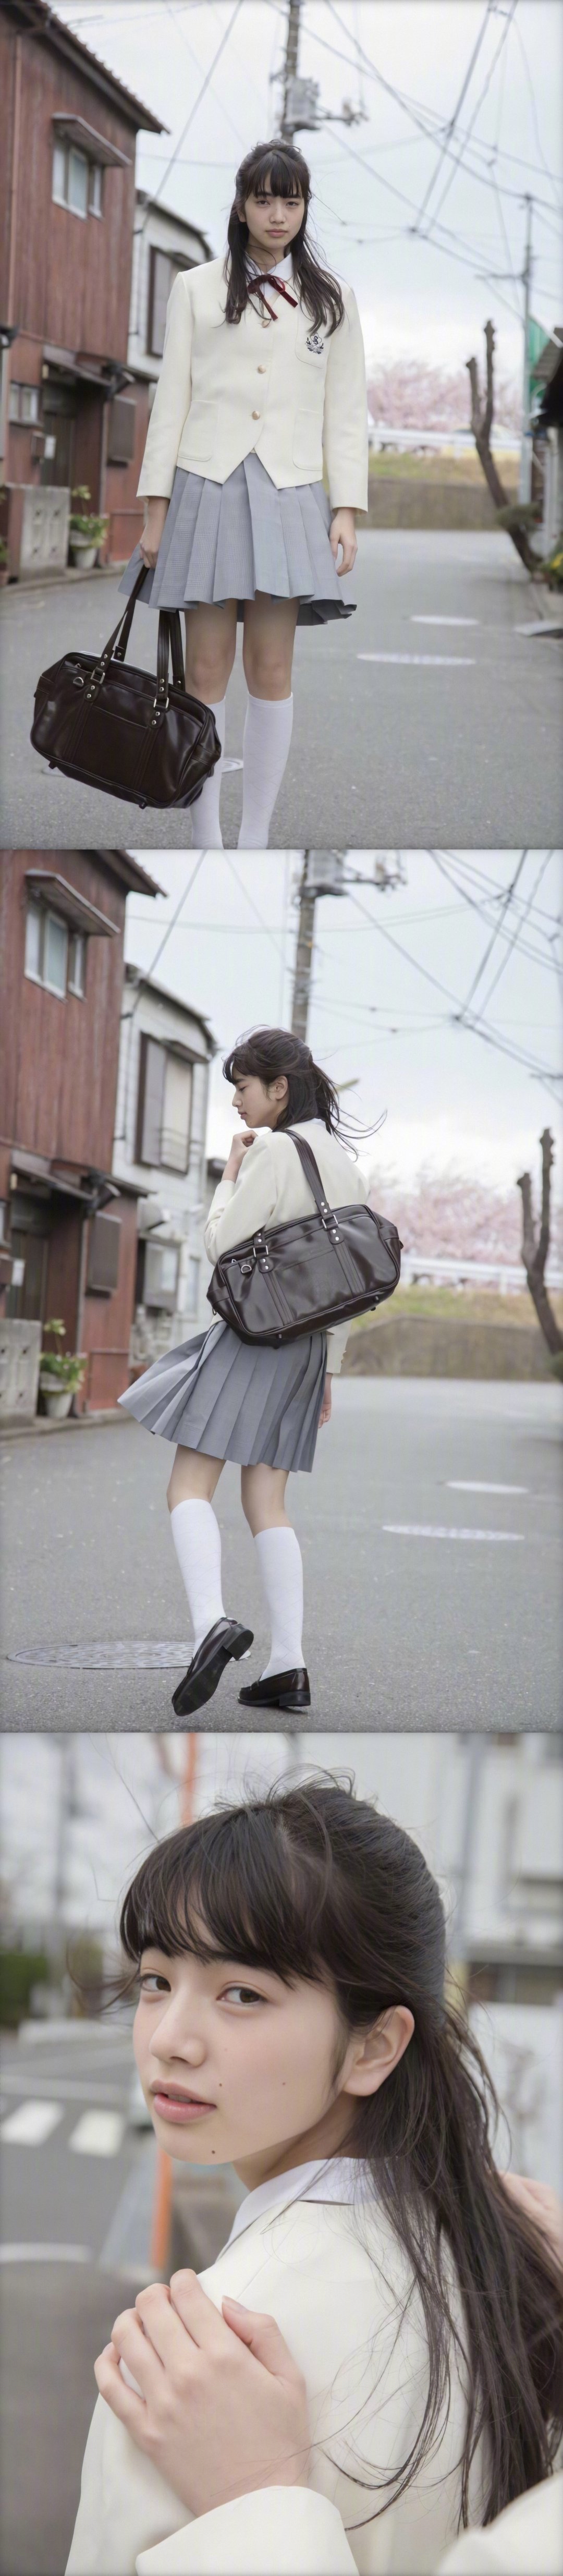 小松菜奈「放学后」写真集,可可爱爱的樱花少女